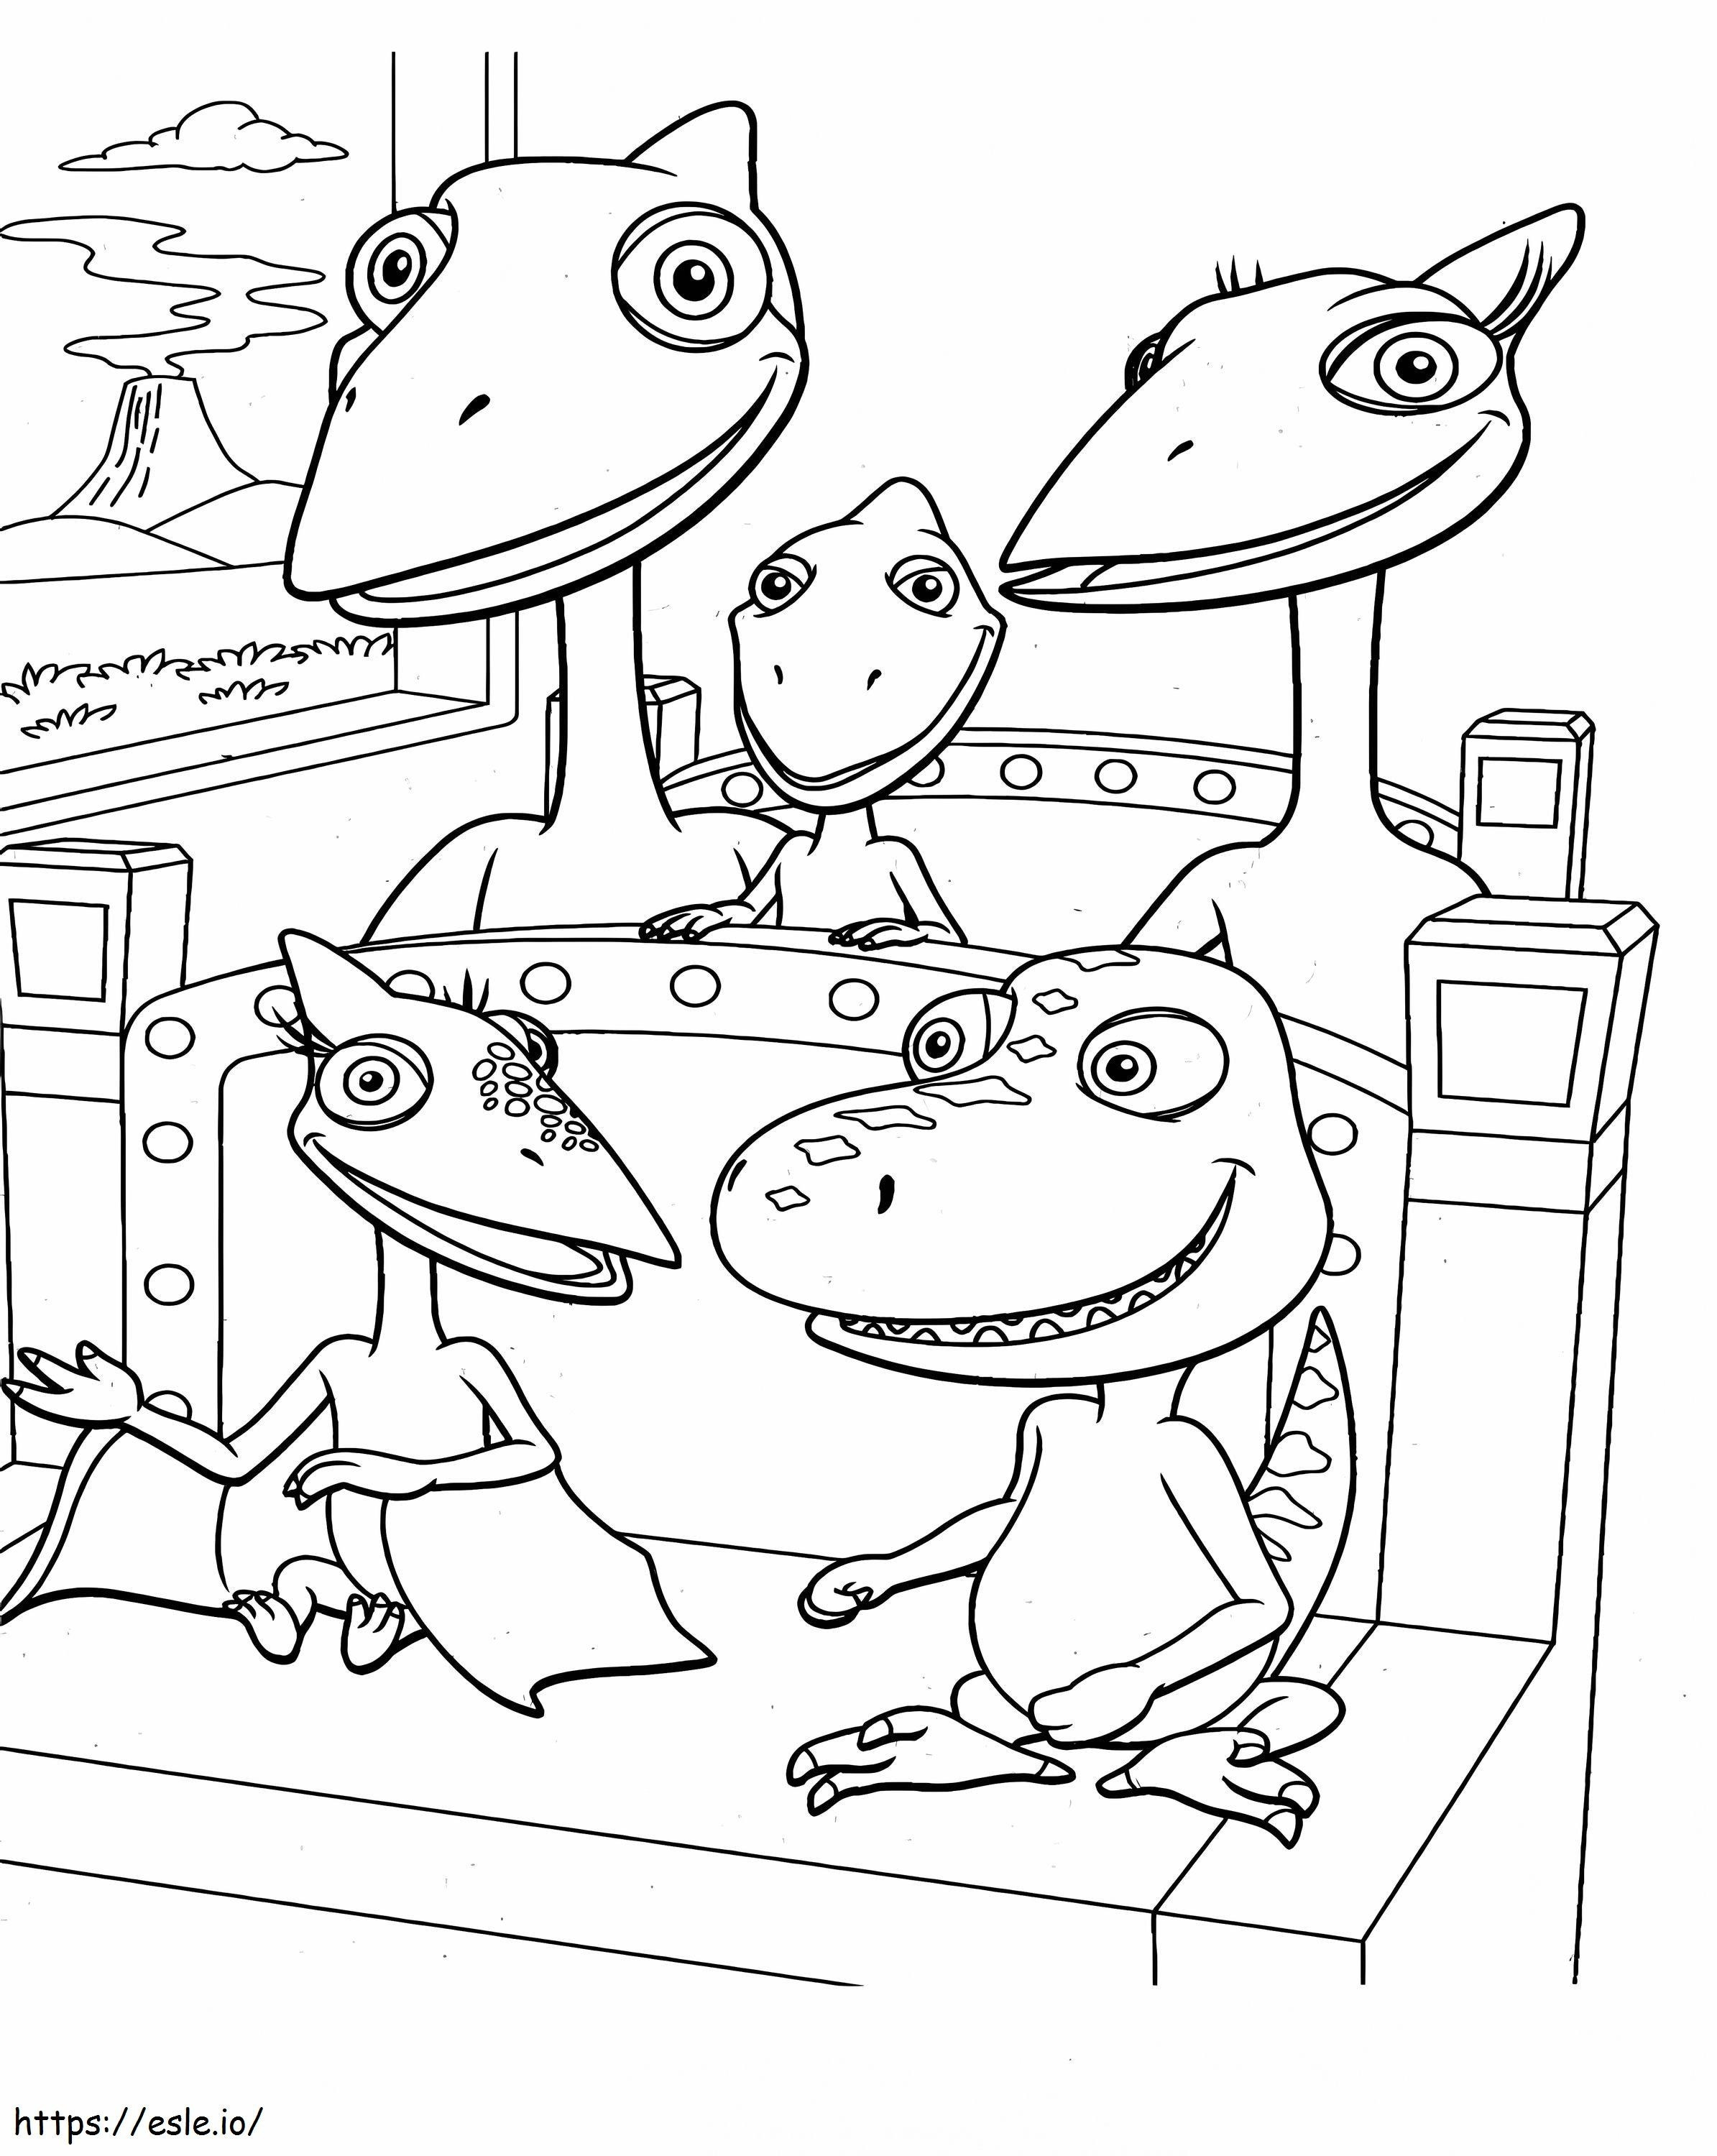 Treno seduto della famiglia dei dinosauri da colorare